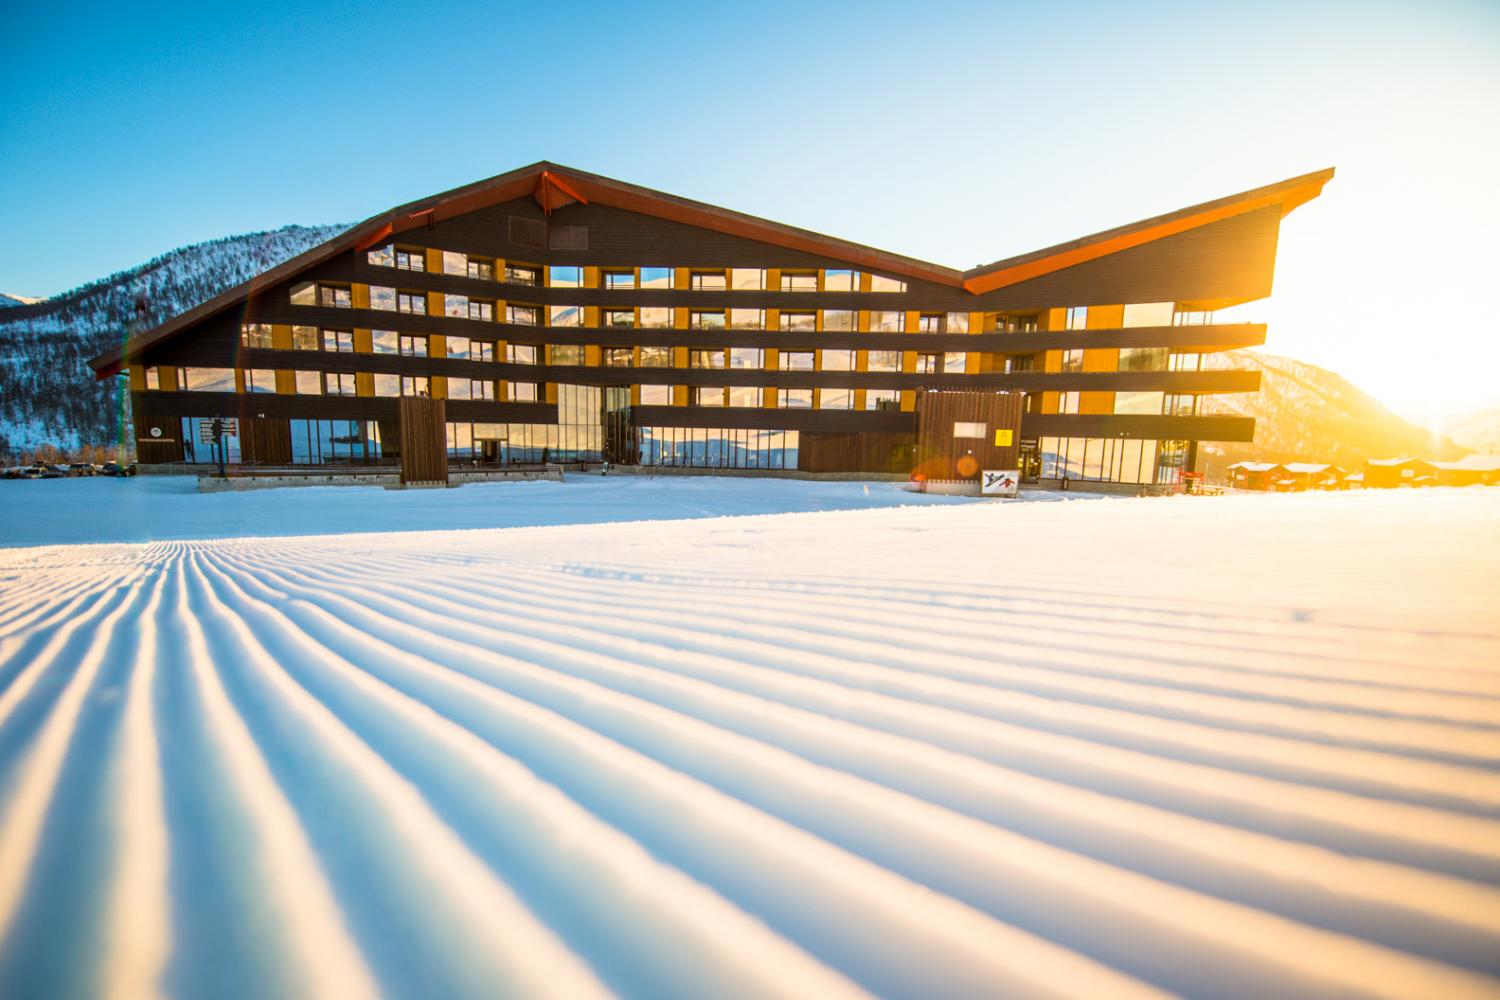 Myrkdalen Hotel during winter